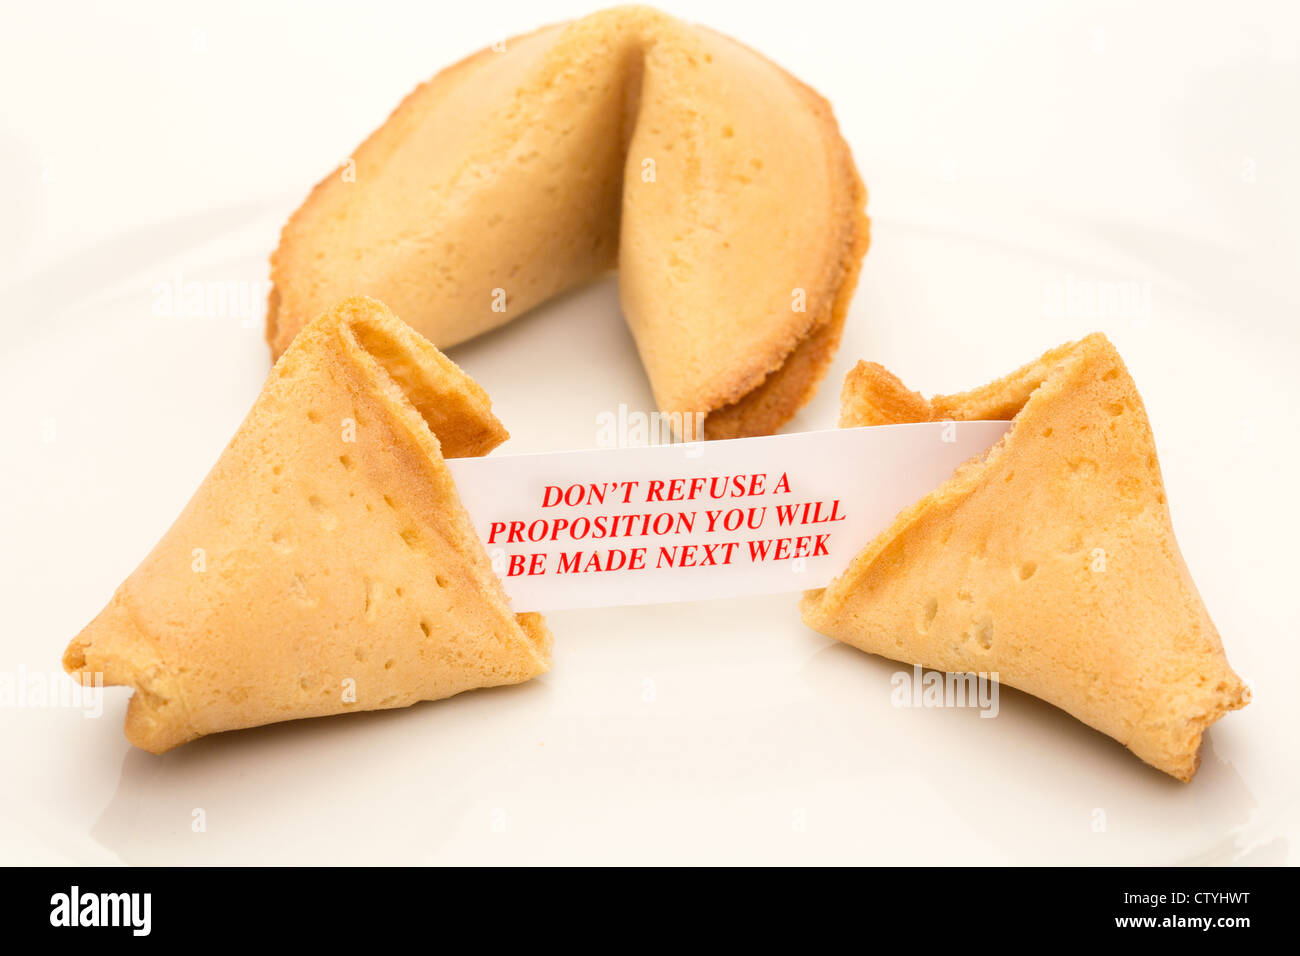 Fortune cookie su una piastra con il messaggio ' Non rifiutare una proposizione si sarà fatta la prossima settimana' - studio shot Foto Stock